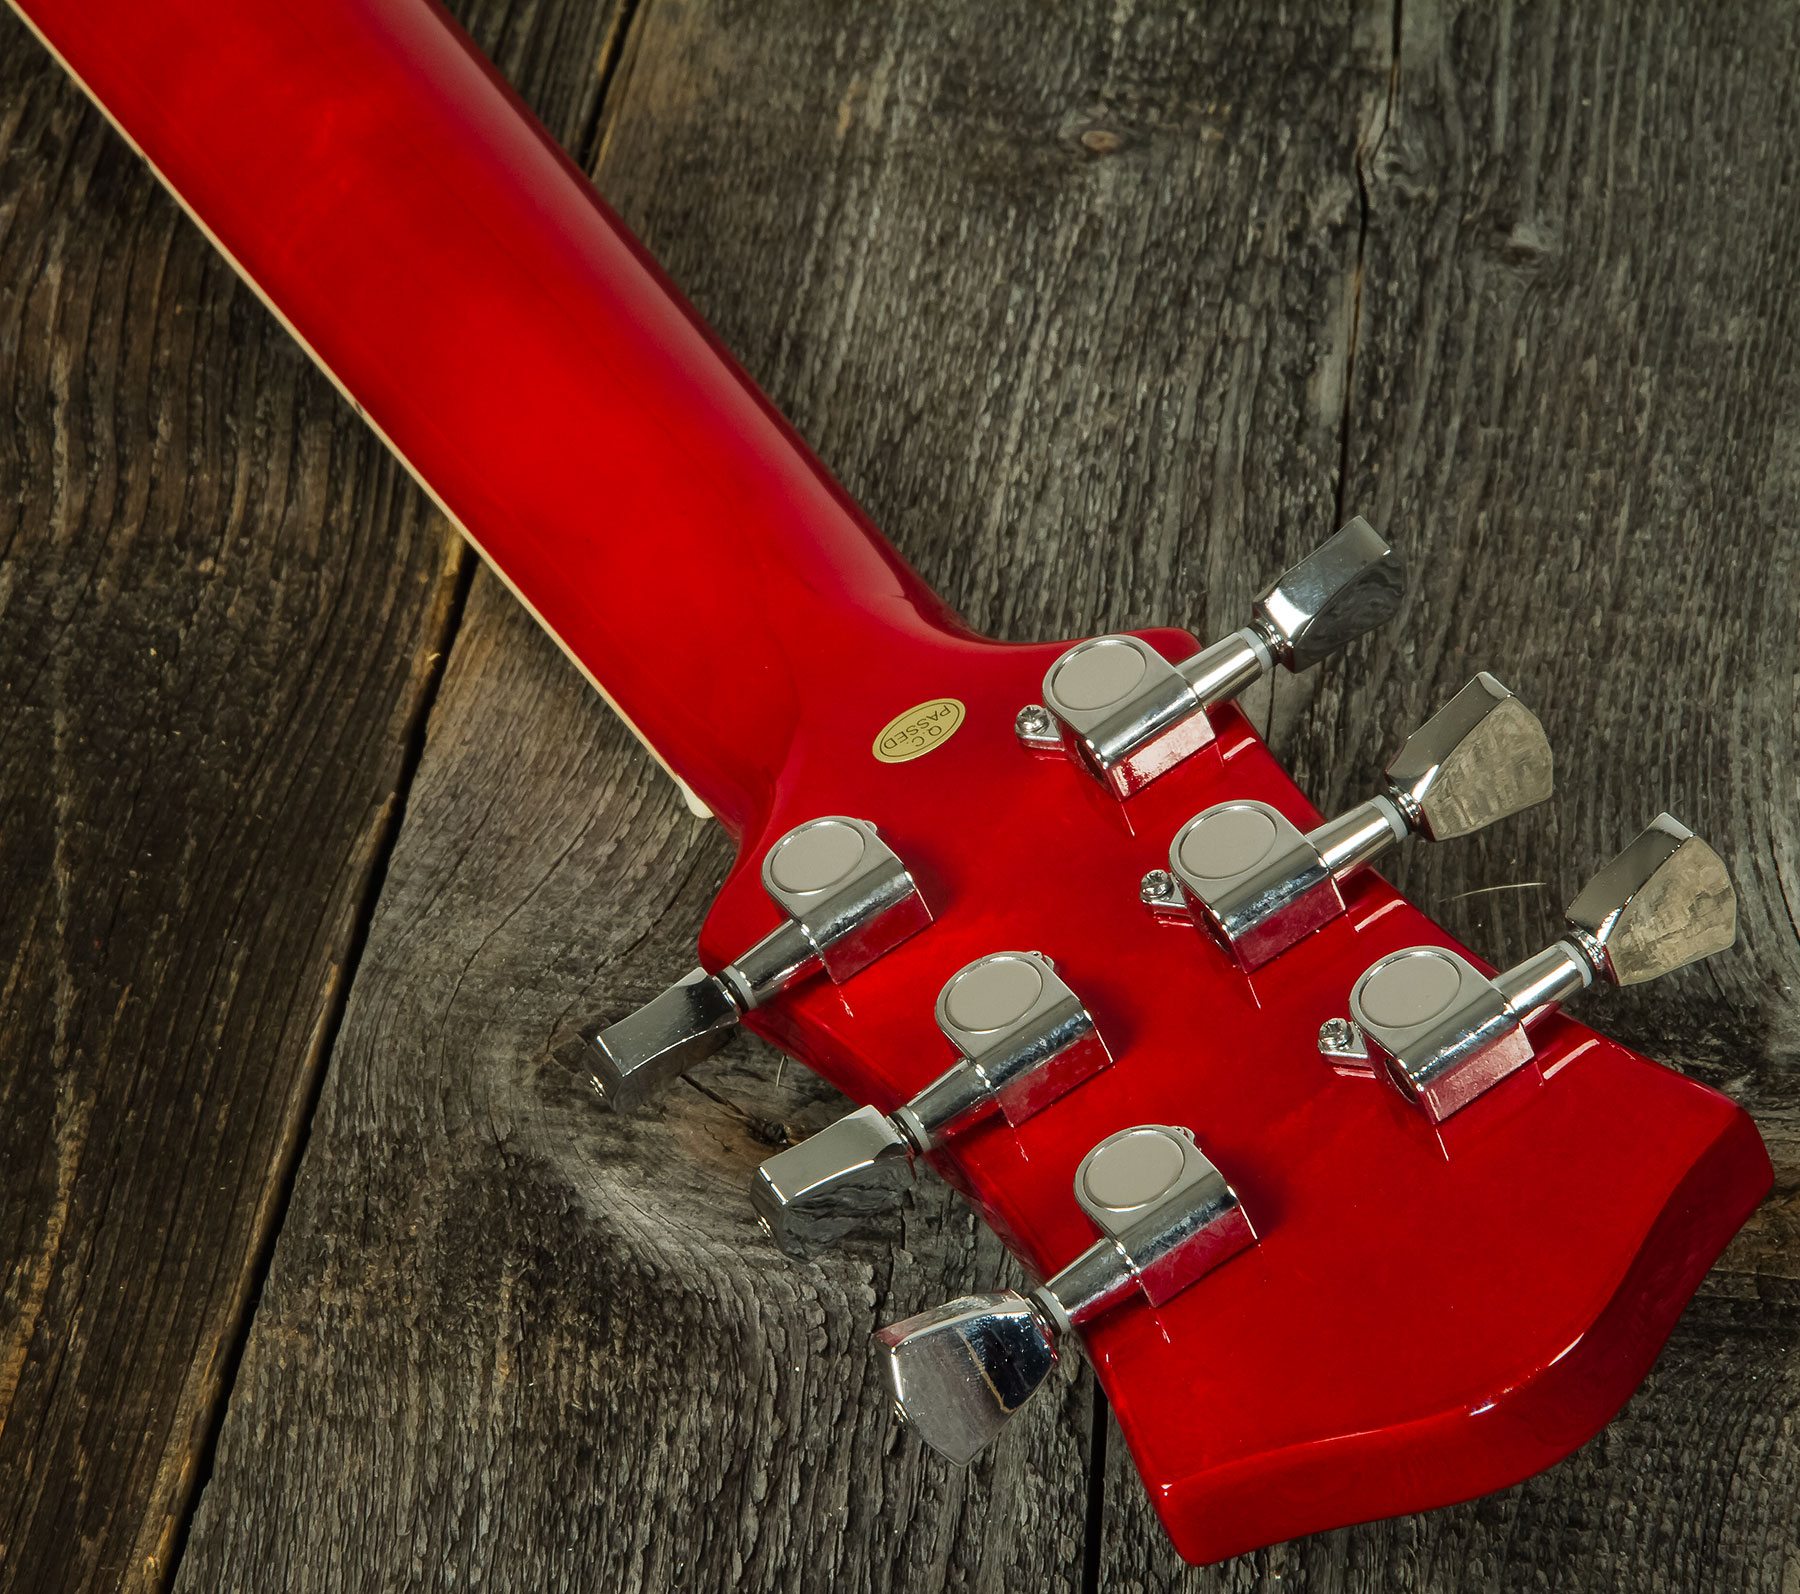 Eastone Sdc70 Hh Ht Pur - Red - Guitarra eléctrica de doble corte - Variation 5